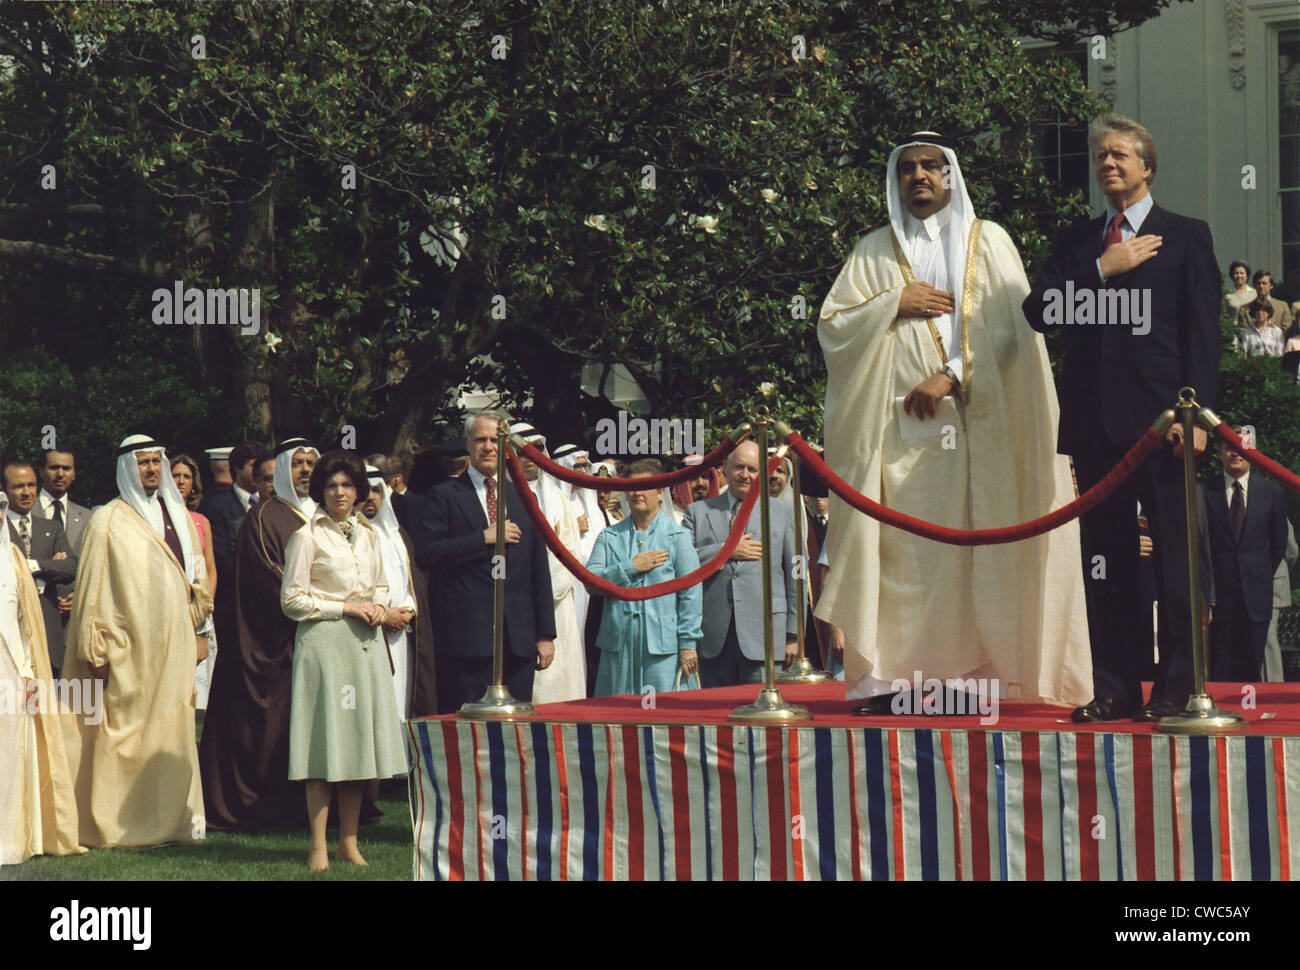 Präsident Carter und Prince Fahd bin Abd al-Aziz Al-Saud 1921 - 2005 Kronprinz von Saudi-Arabien während einer Willkommenszeremonie am Stockfoto